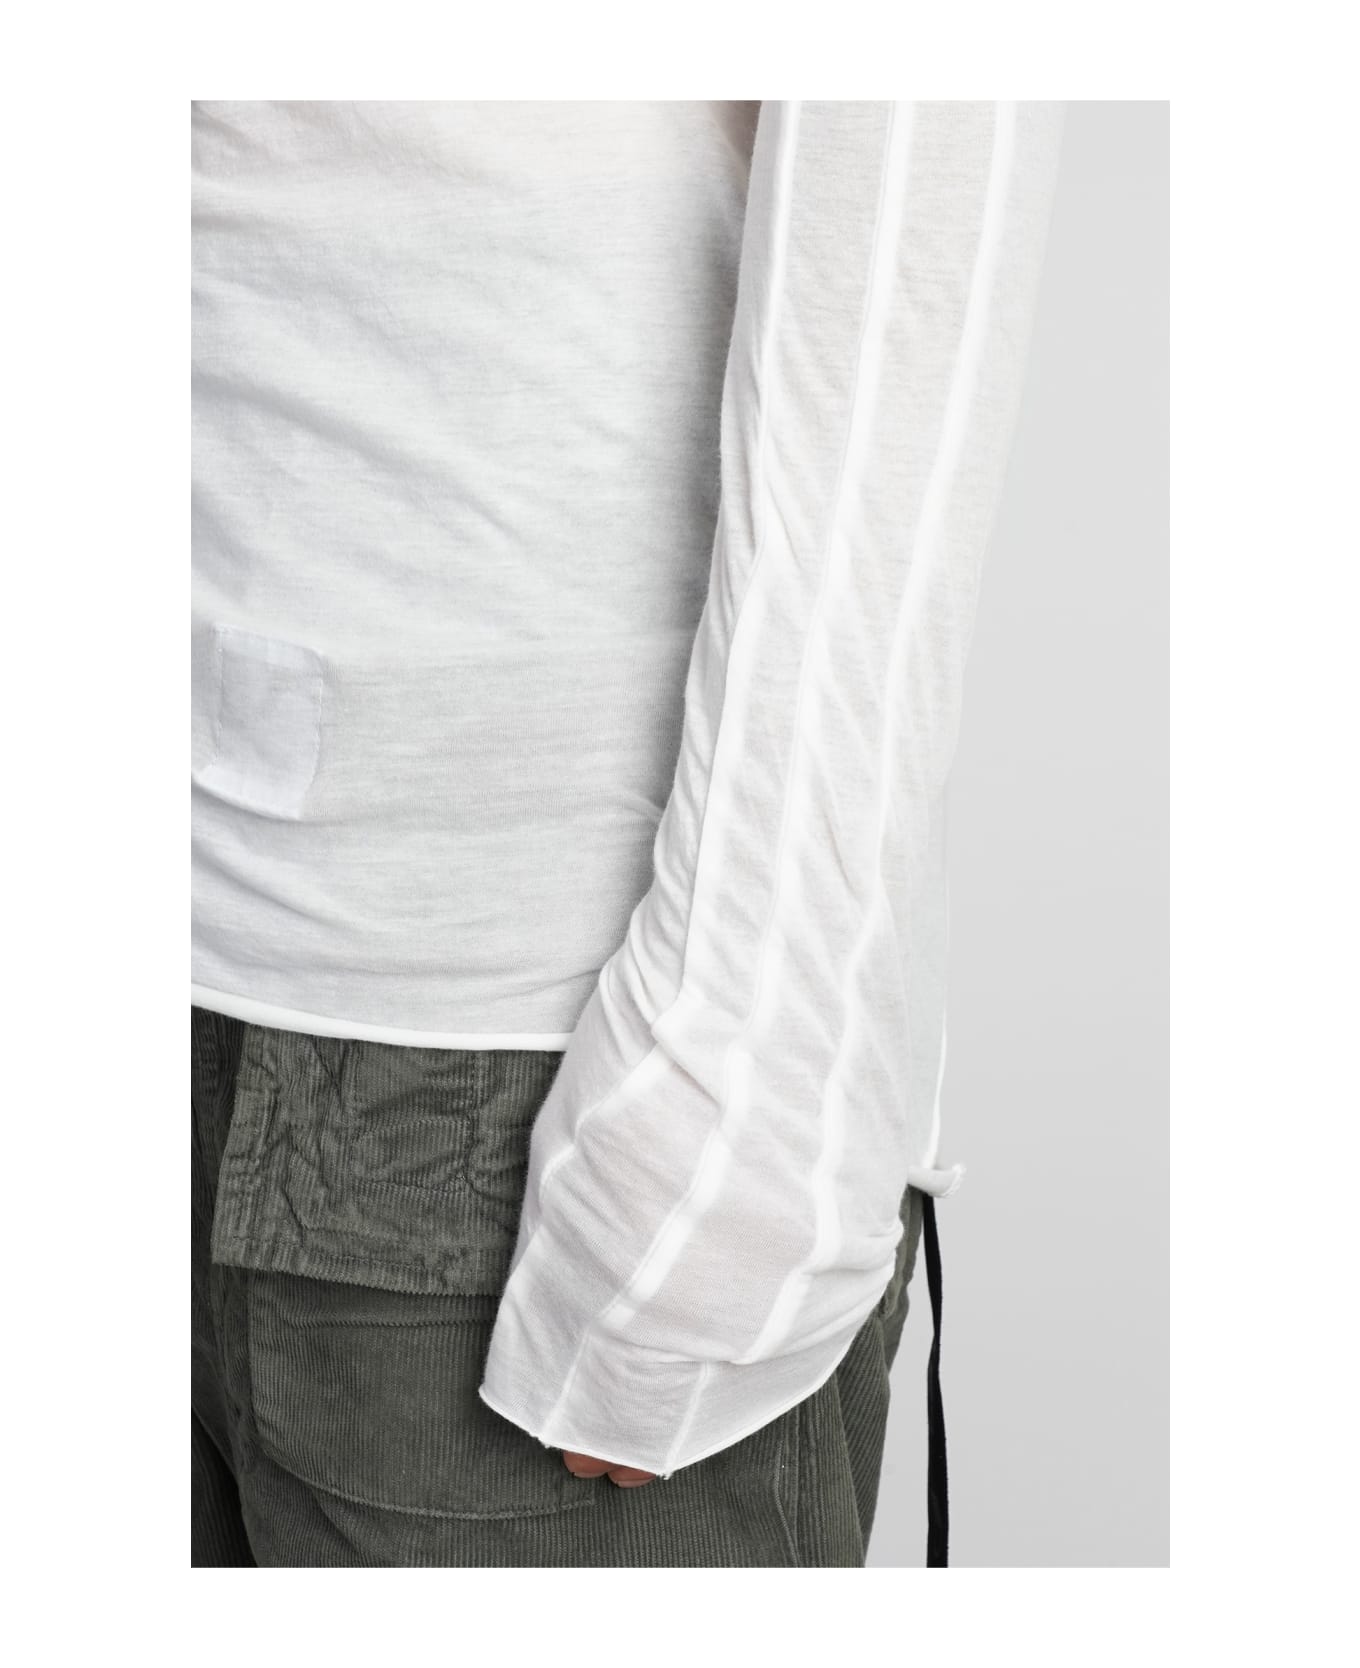 DRKSHDW Long Sleeve T-shirt - White